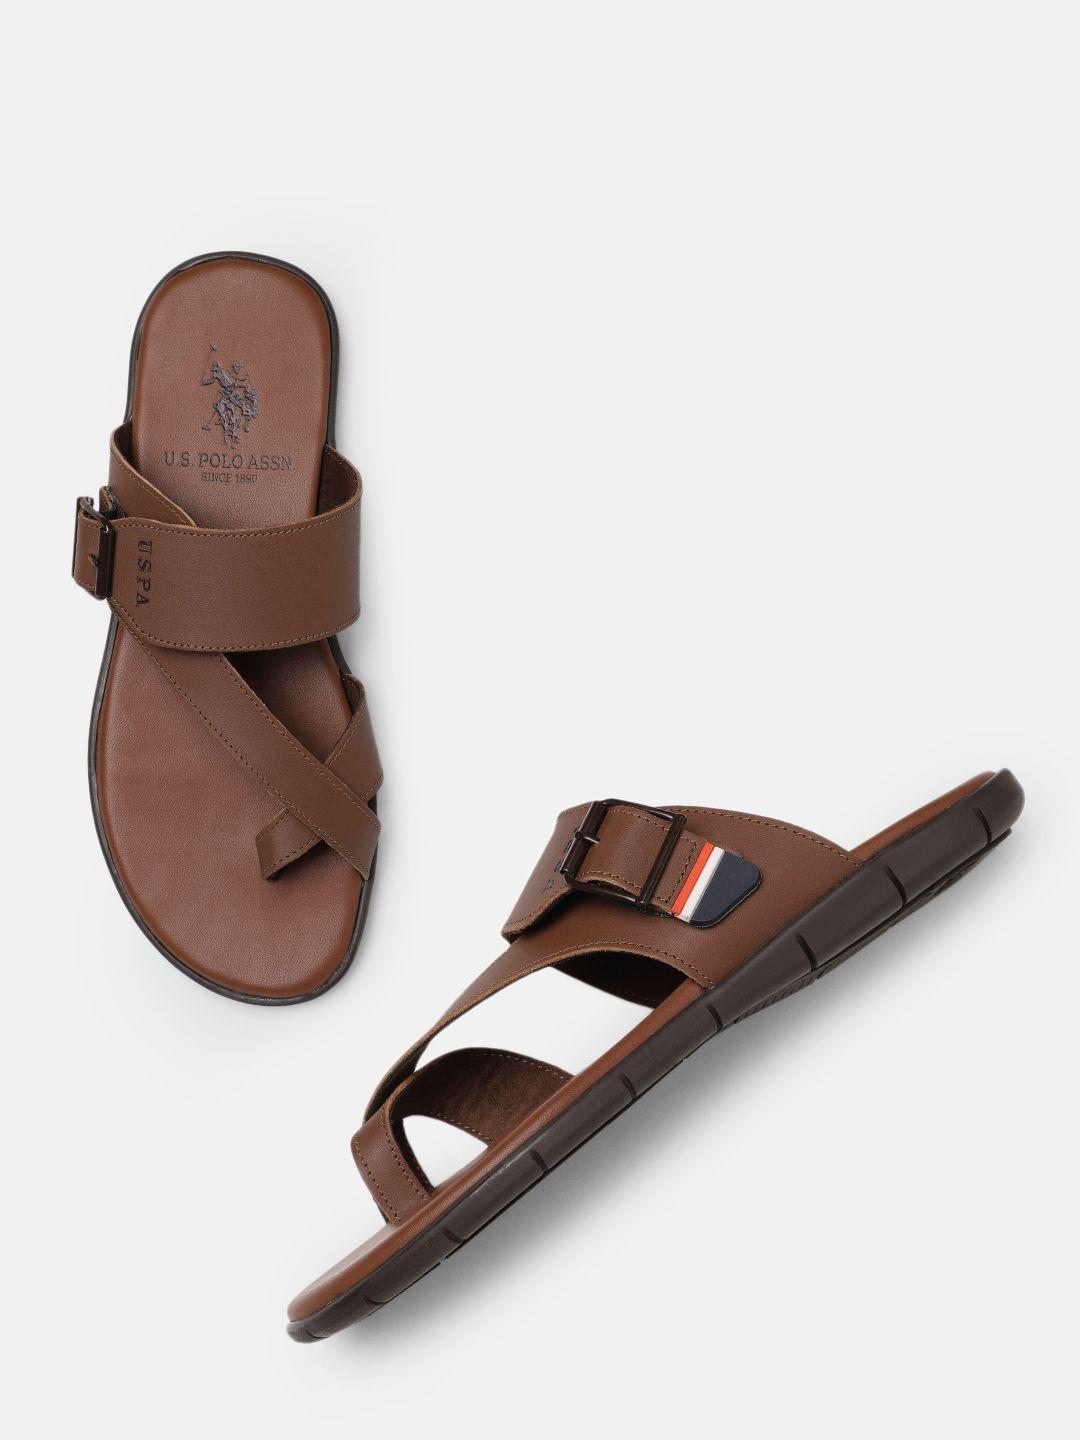 u.s. polo assn. men adrick 2.0 comfort sandals